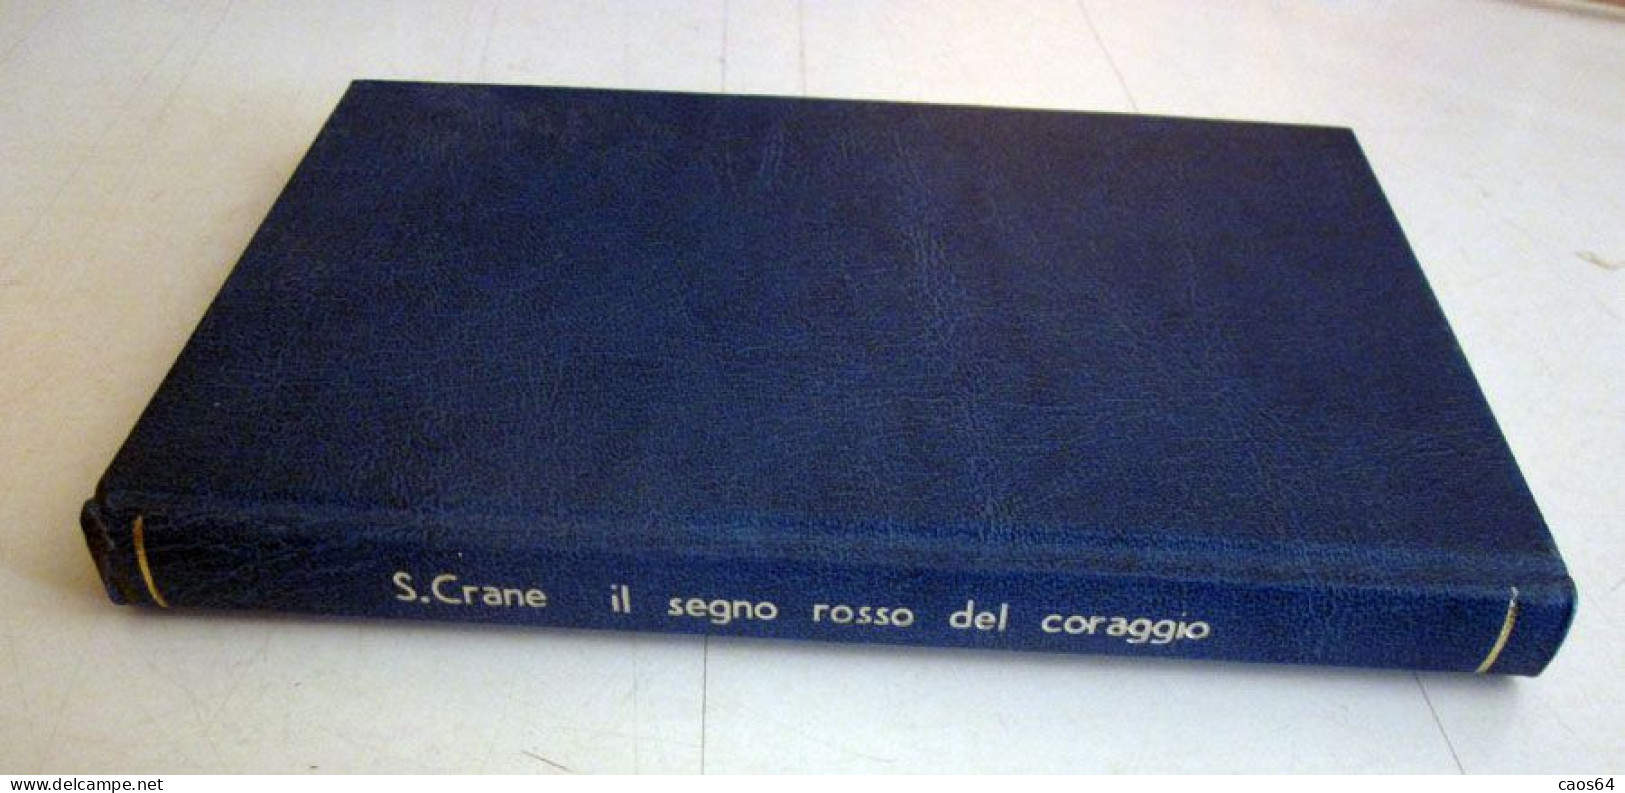 Il Segno Rosso Del Coraggio Stephen Crane Rizzoli BUR 1951 - Classic